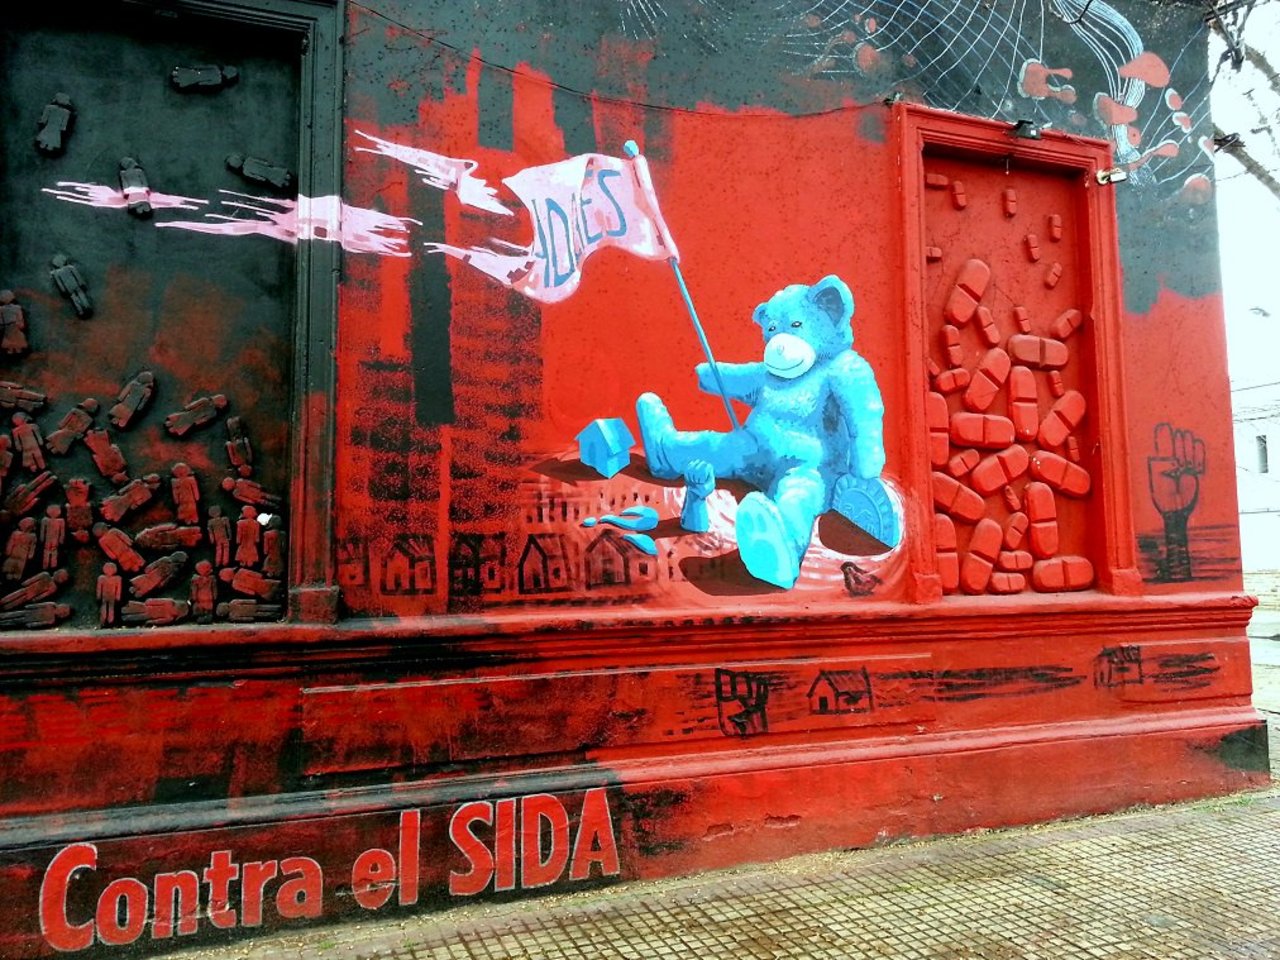 #Graffiti de hoy: << Contra el Sida >> calles 40y117 #LaPlata #Argentina #StreetArt #UrbanArt #ArteUrbano https://t.co/uAR28yb3PI